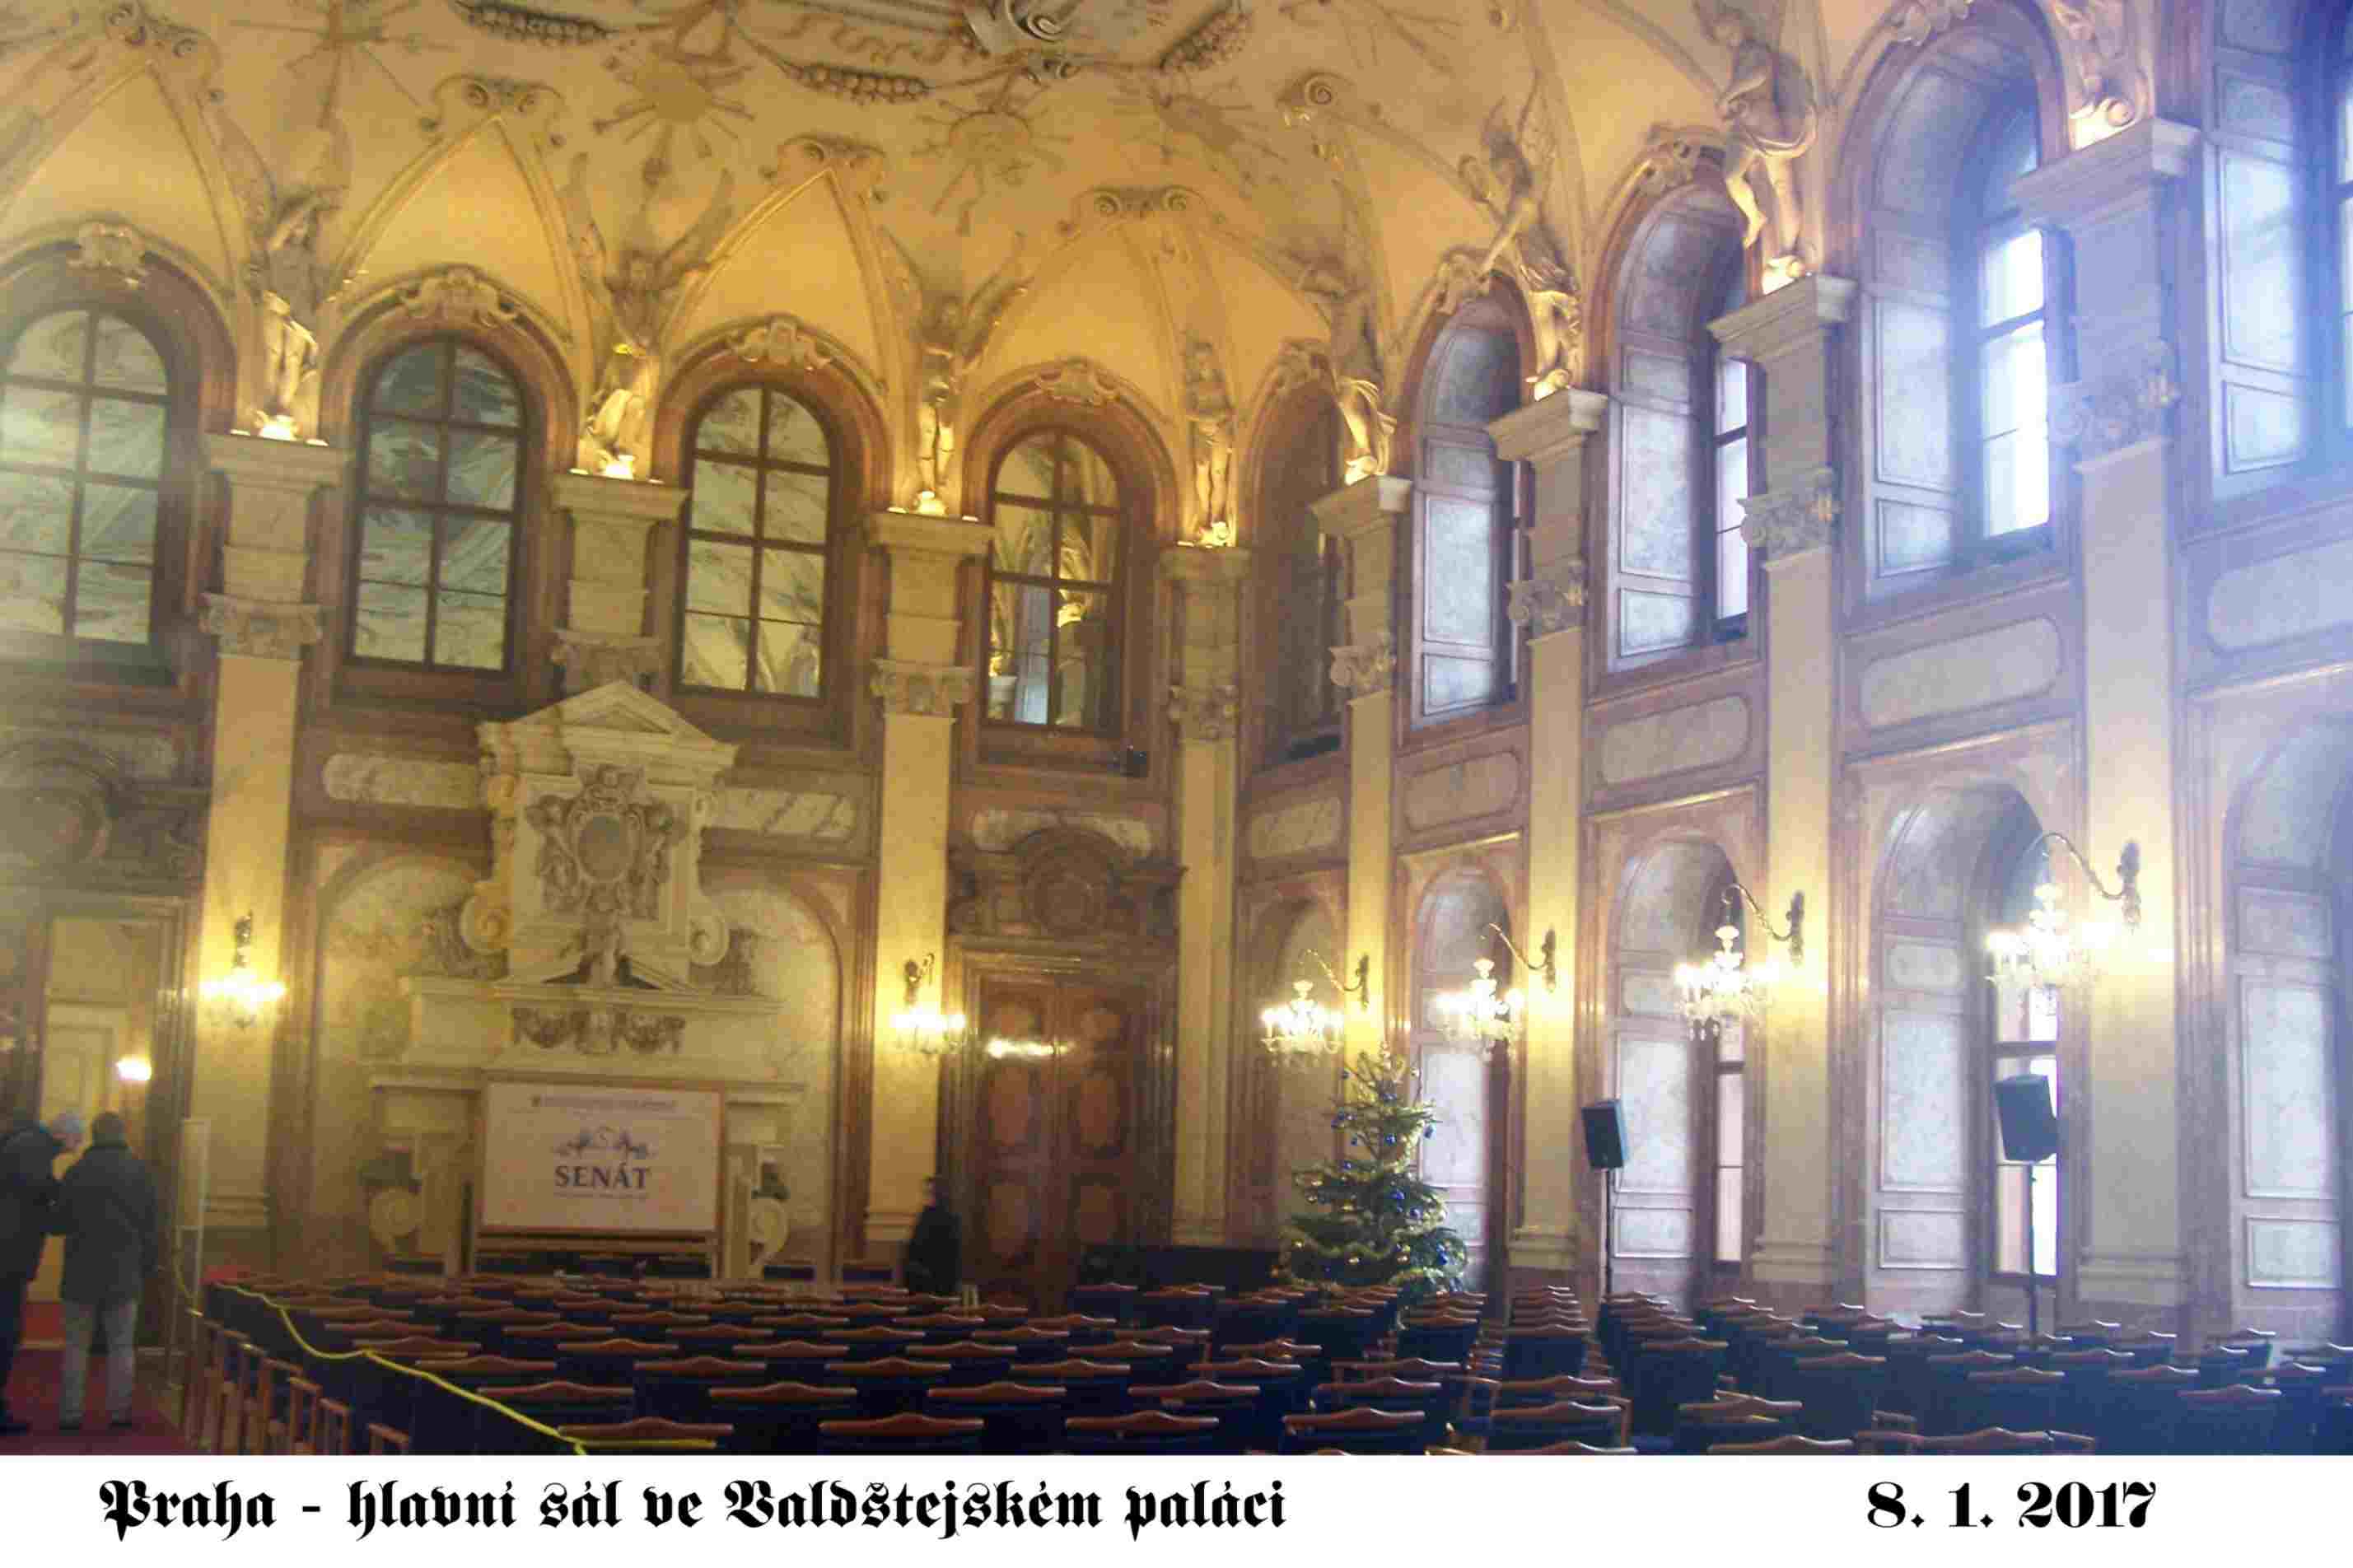 Hlavní sál Valdštejského paláce